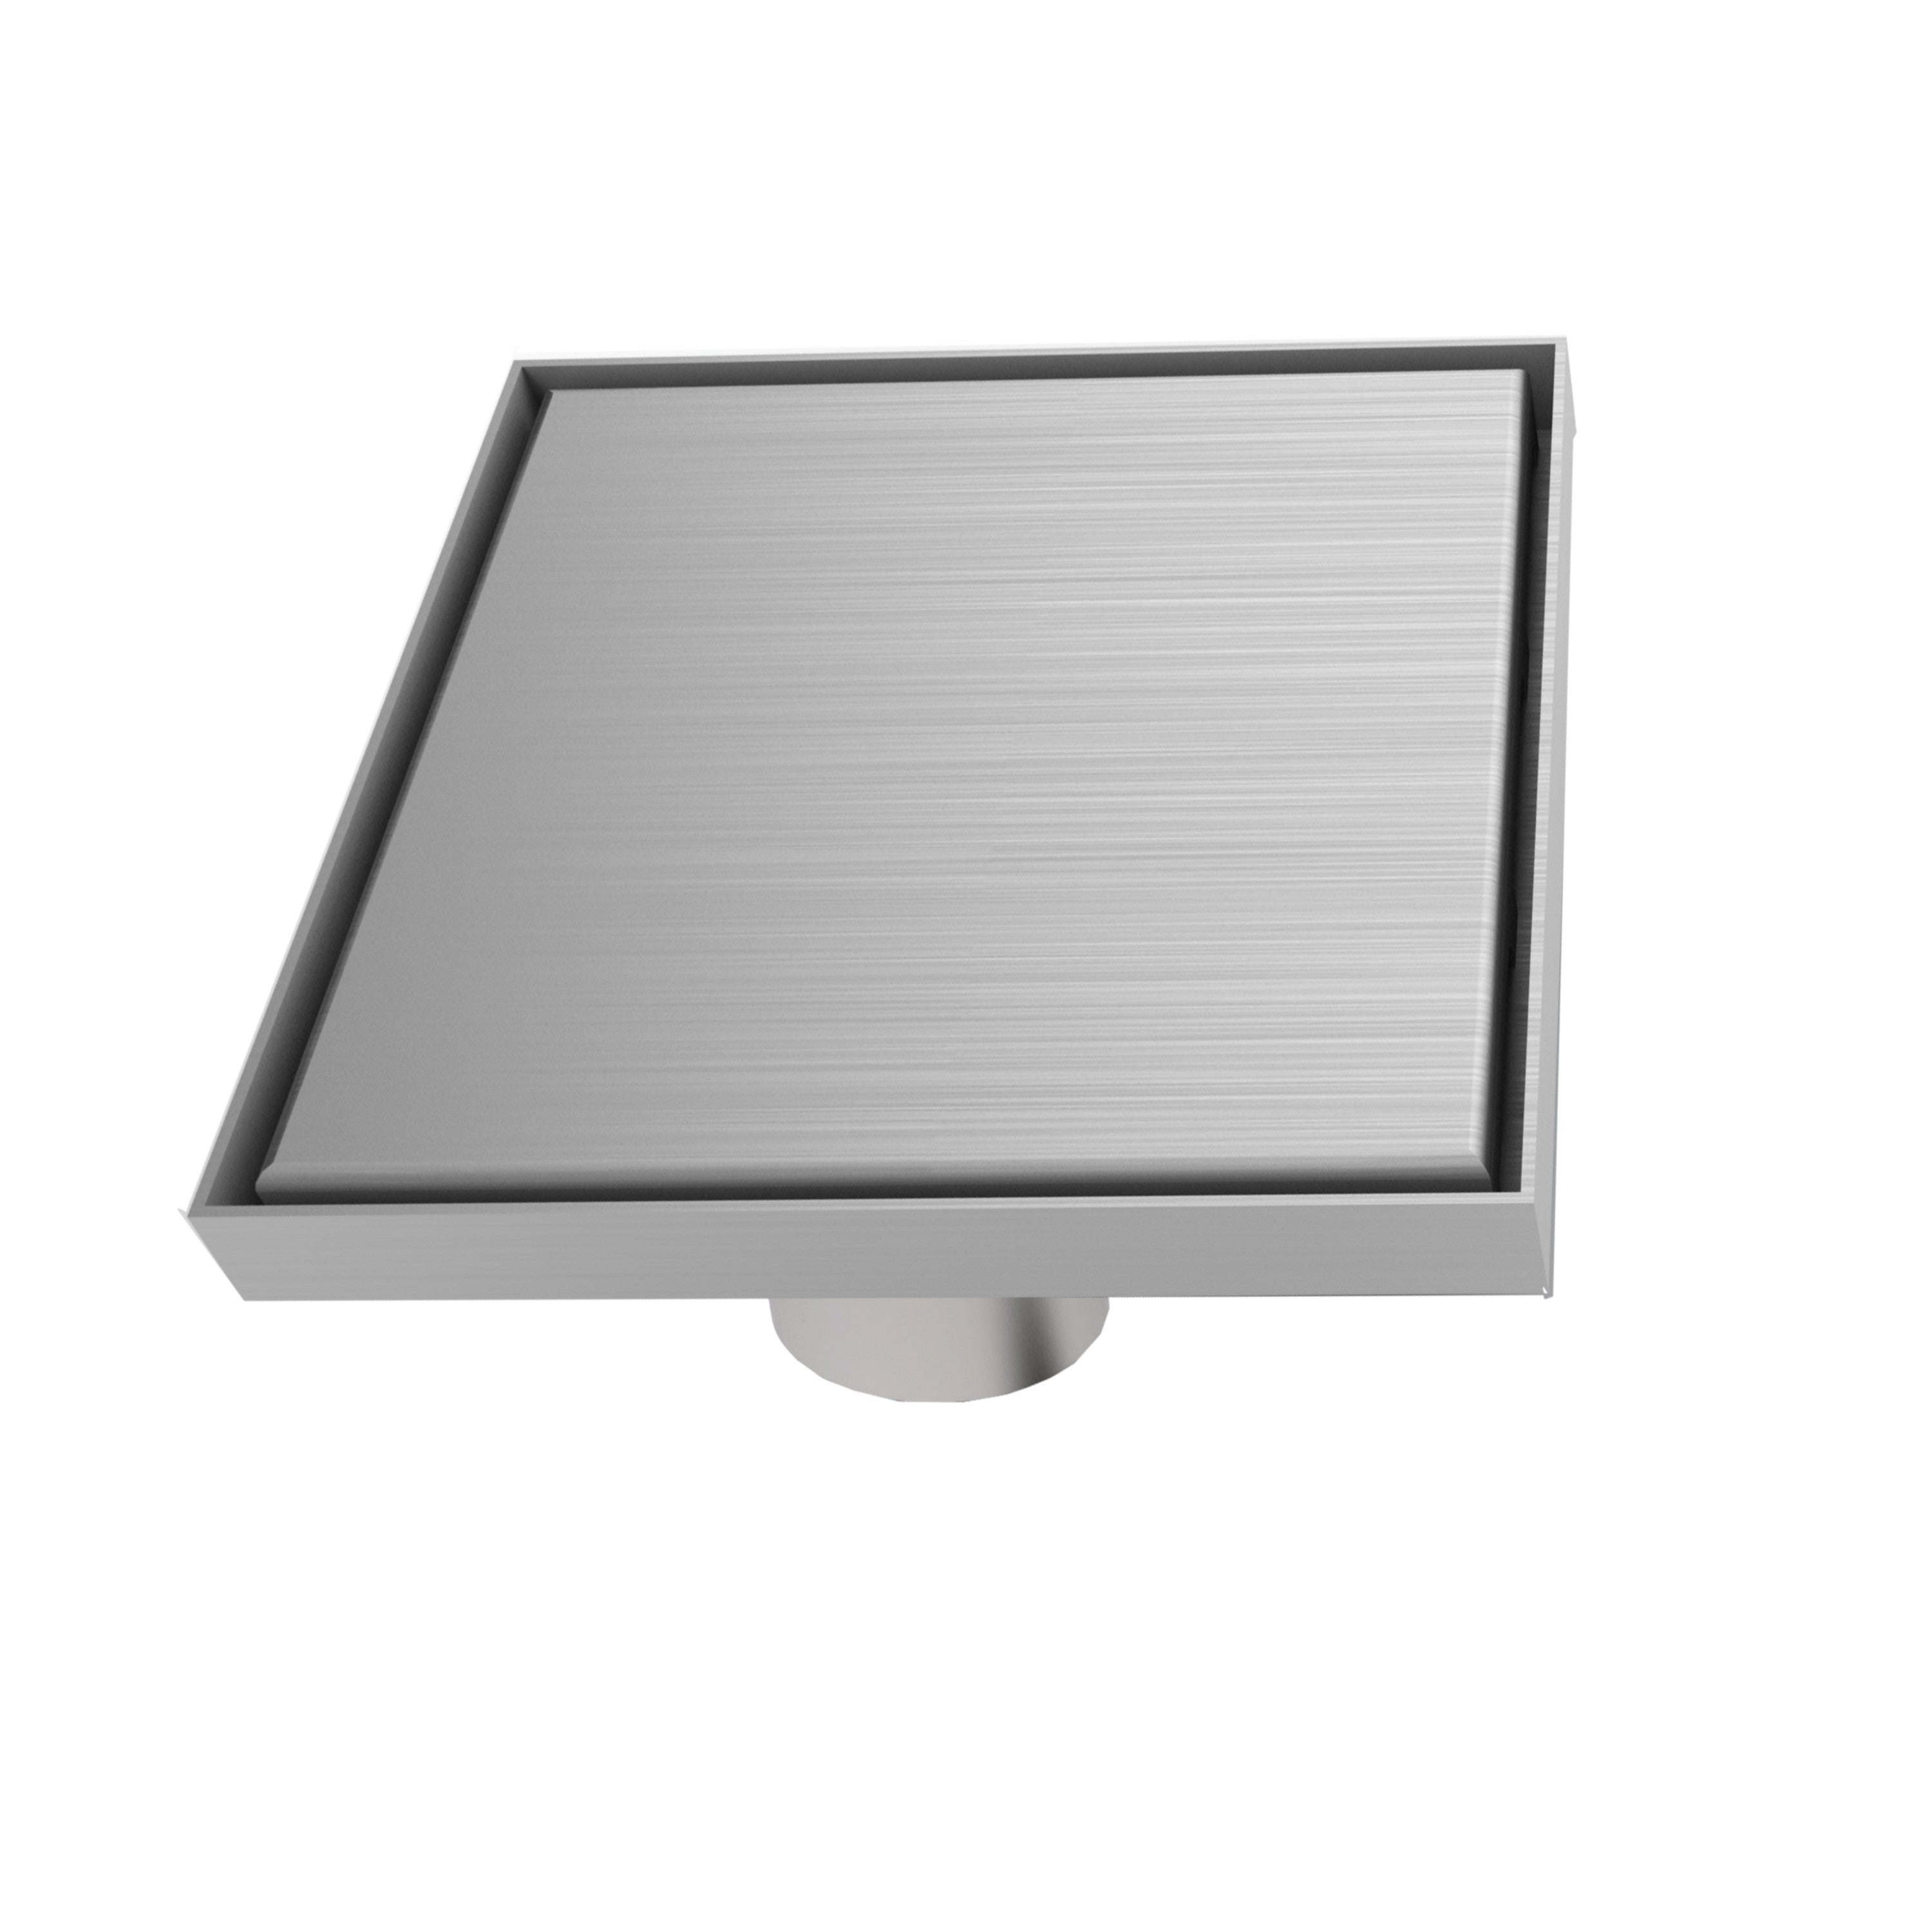 MERT Ultra Flach Bodenablauf Design "Edel" 200x200 mm, komplett aus Edelstahl, Einbauhöhe ab 2 mm